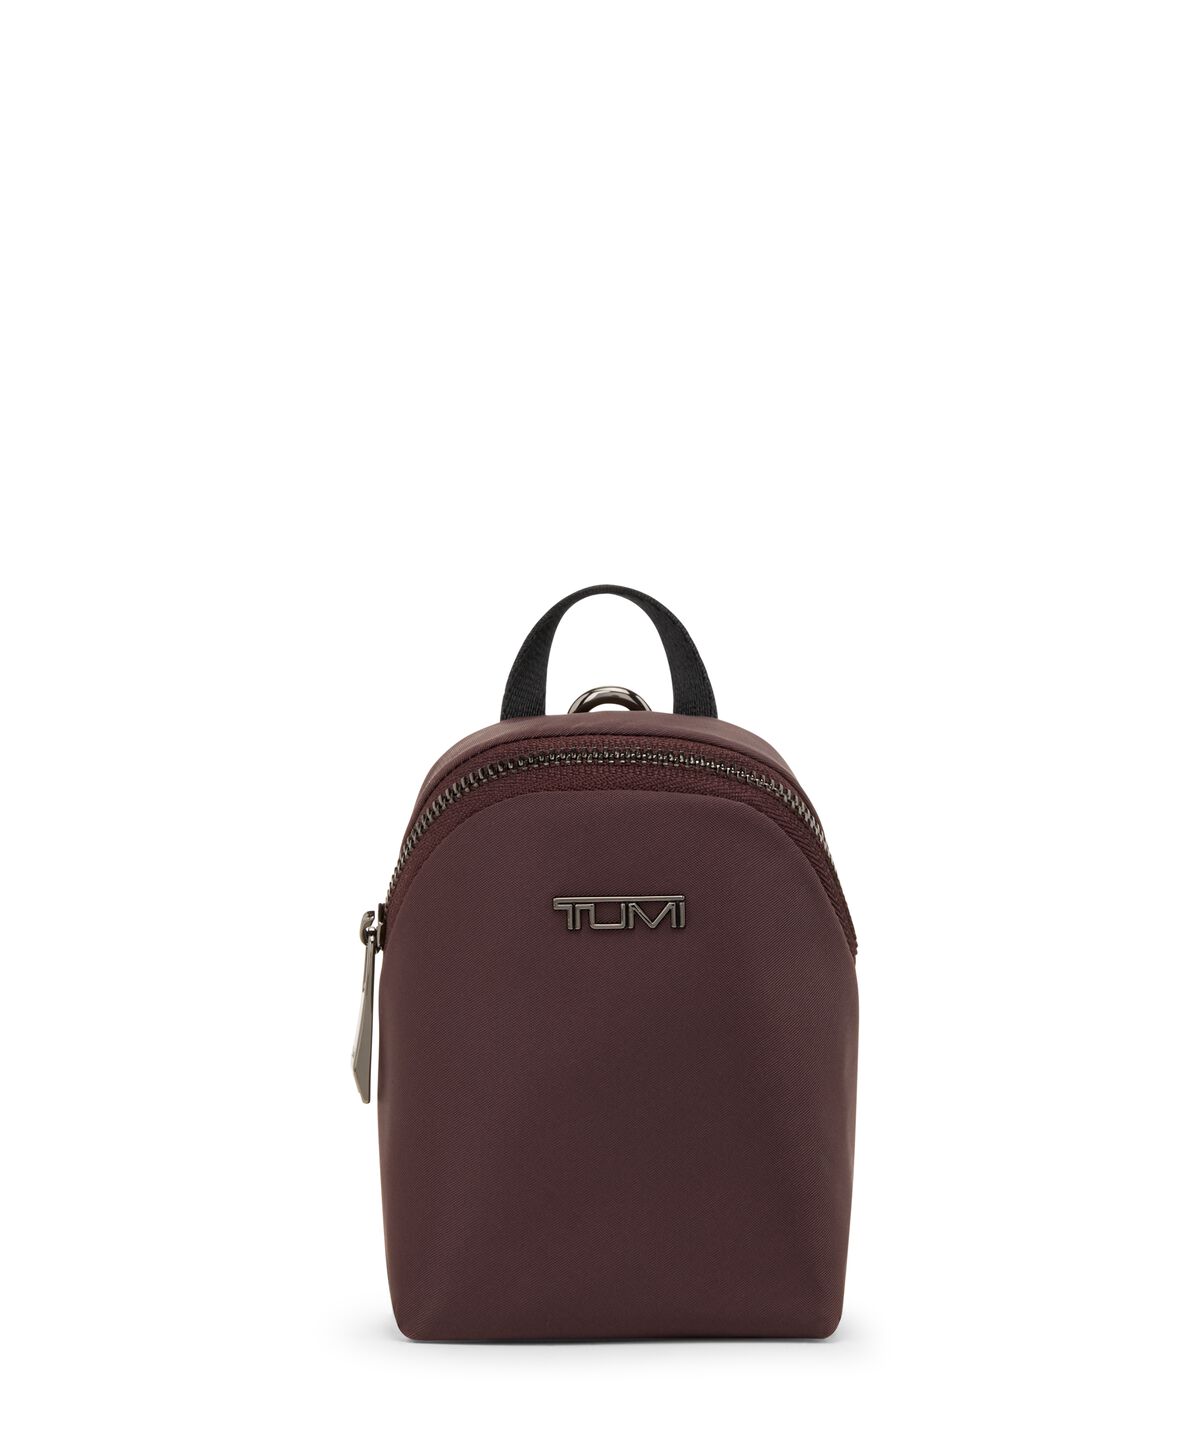 Shop Cln Backpack online